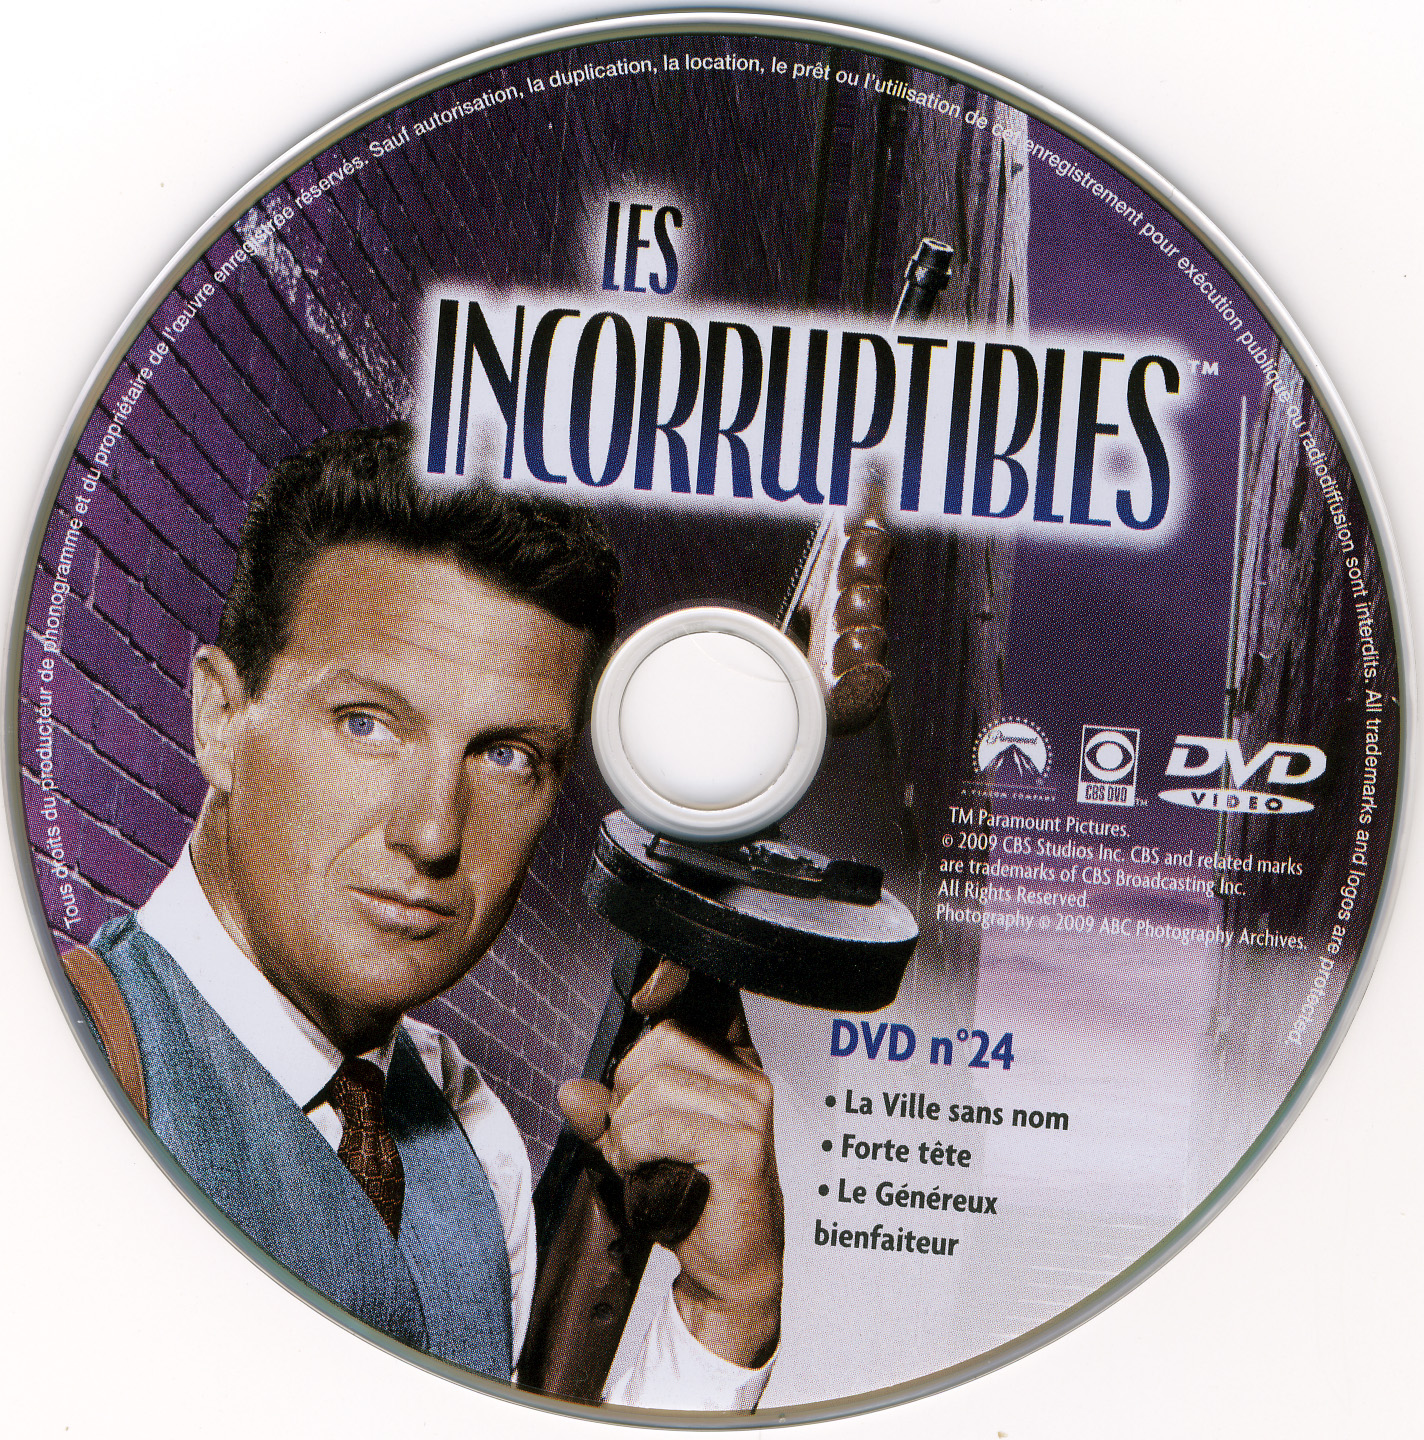 Les incorruptibles intgrale DVD 24